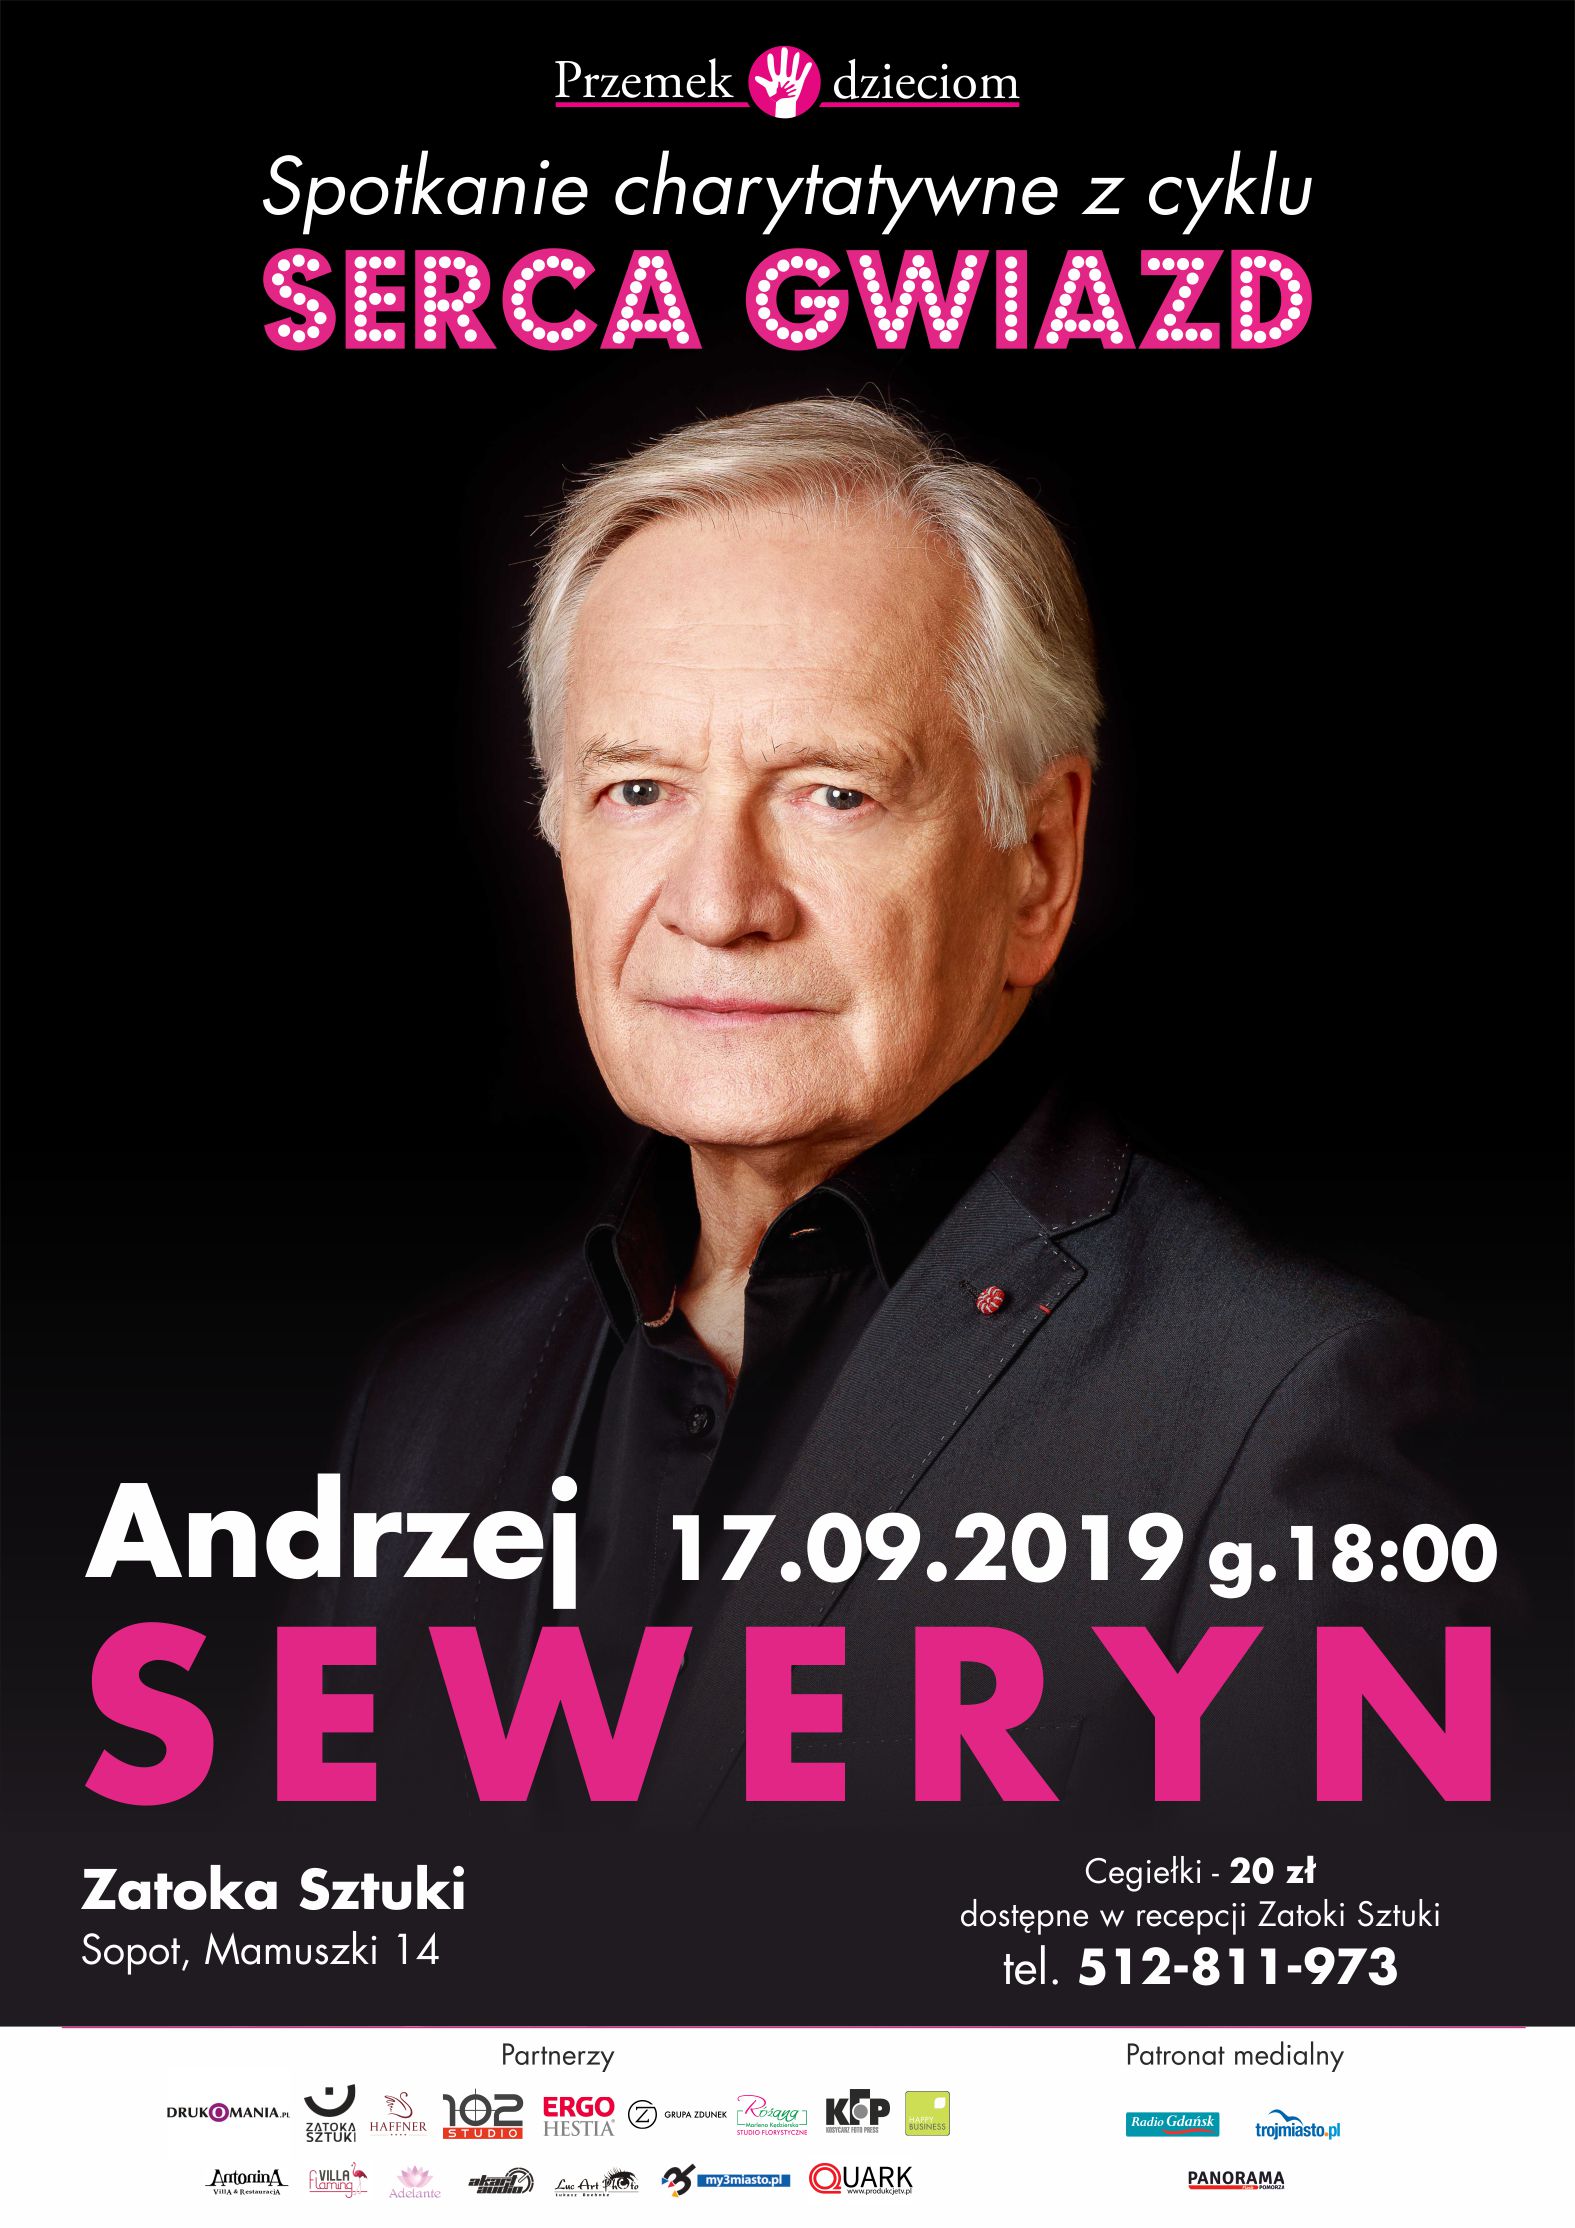 Andrzej Seweryn w Sopocie - Serca Gwiazd